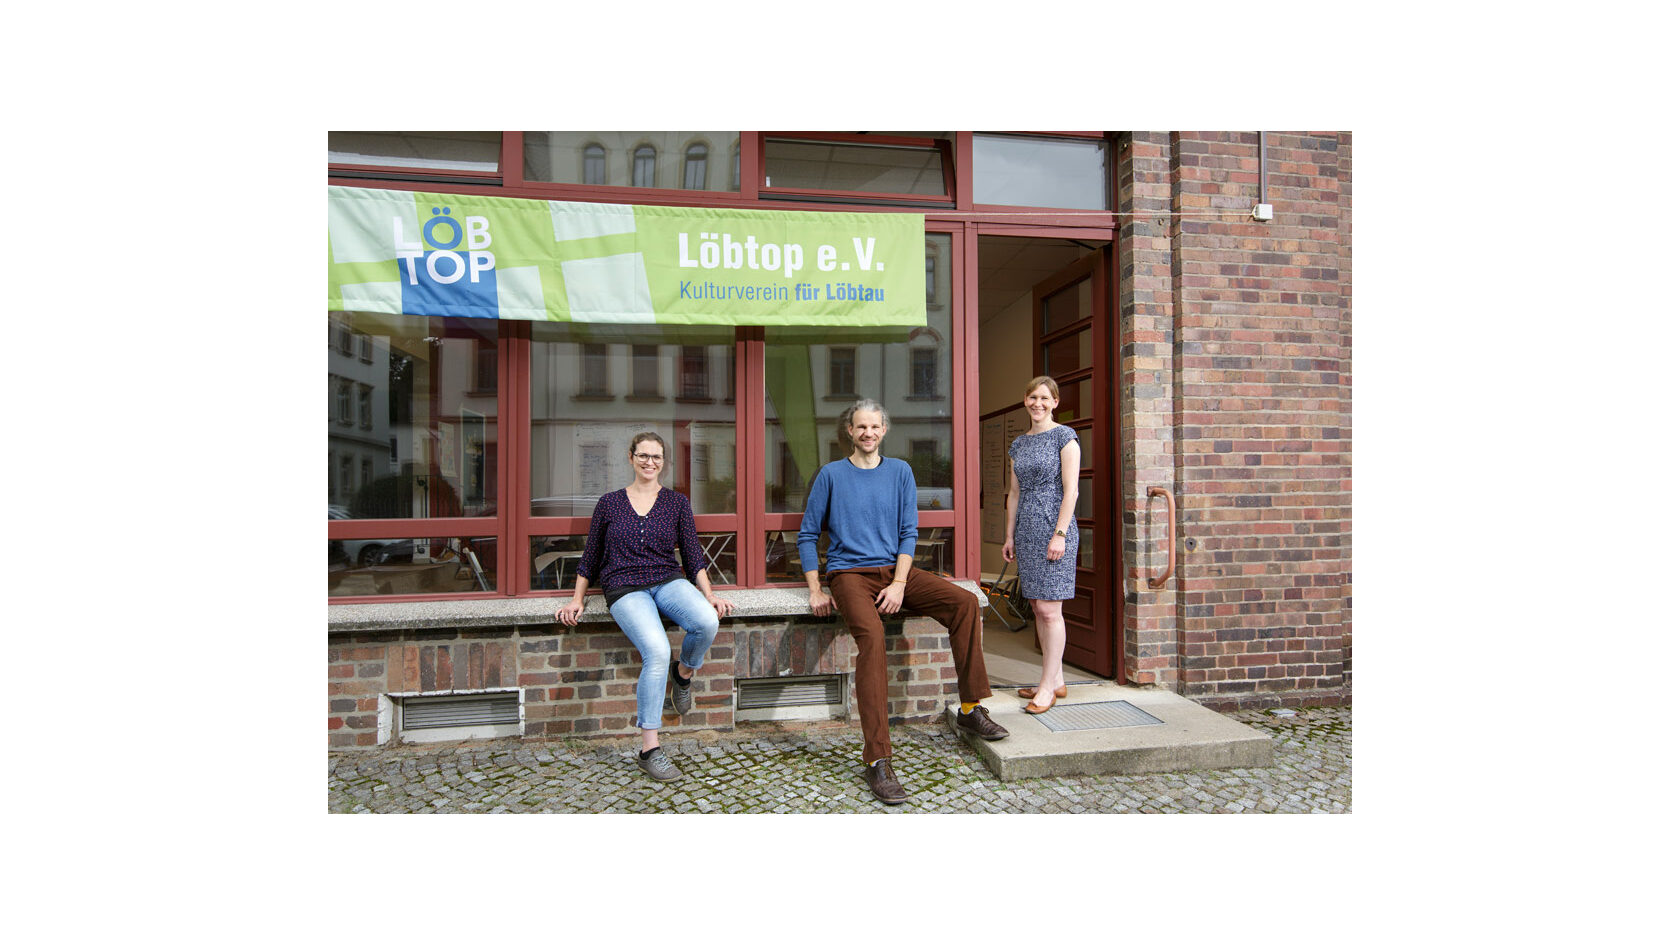 Portraitfoto der Initiatoren des Projekts "Ideenwerkstatt 950 Jahre Löbtau" vom Verein Löbtop e. V., Kulturverein für Löbtau. Zu sehen sind Viola Martin-Mönnich, Felix Liebig und Lina Addicks vor dem Vereinsbüro.